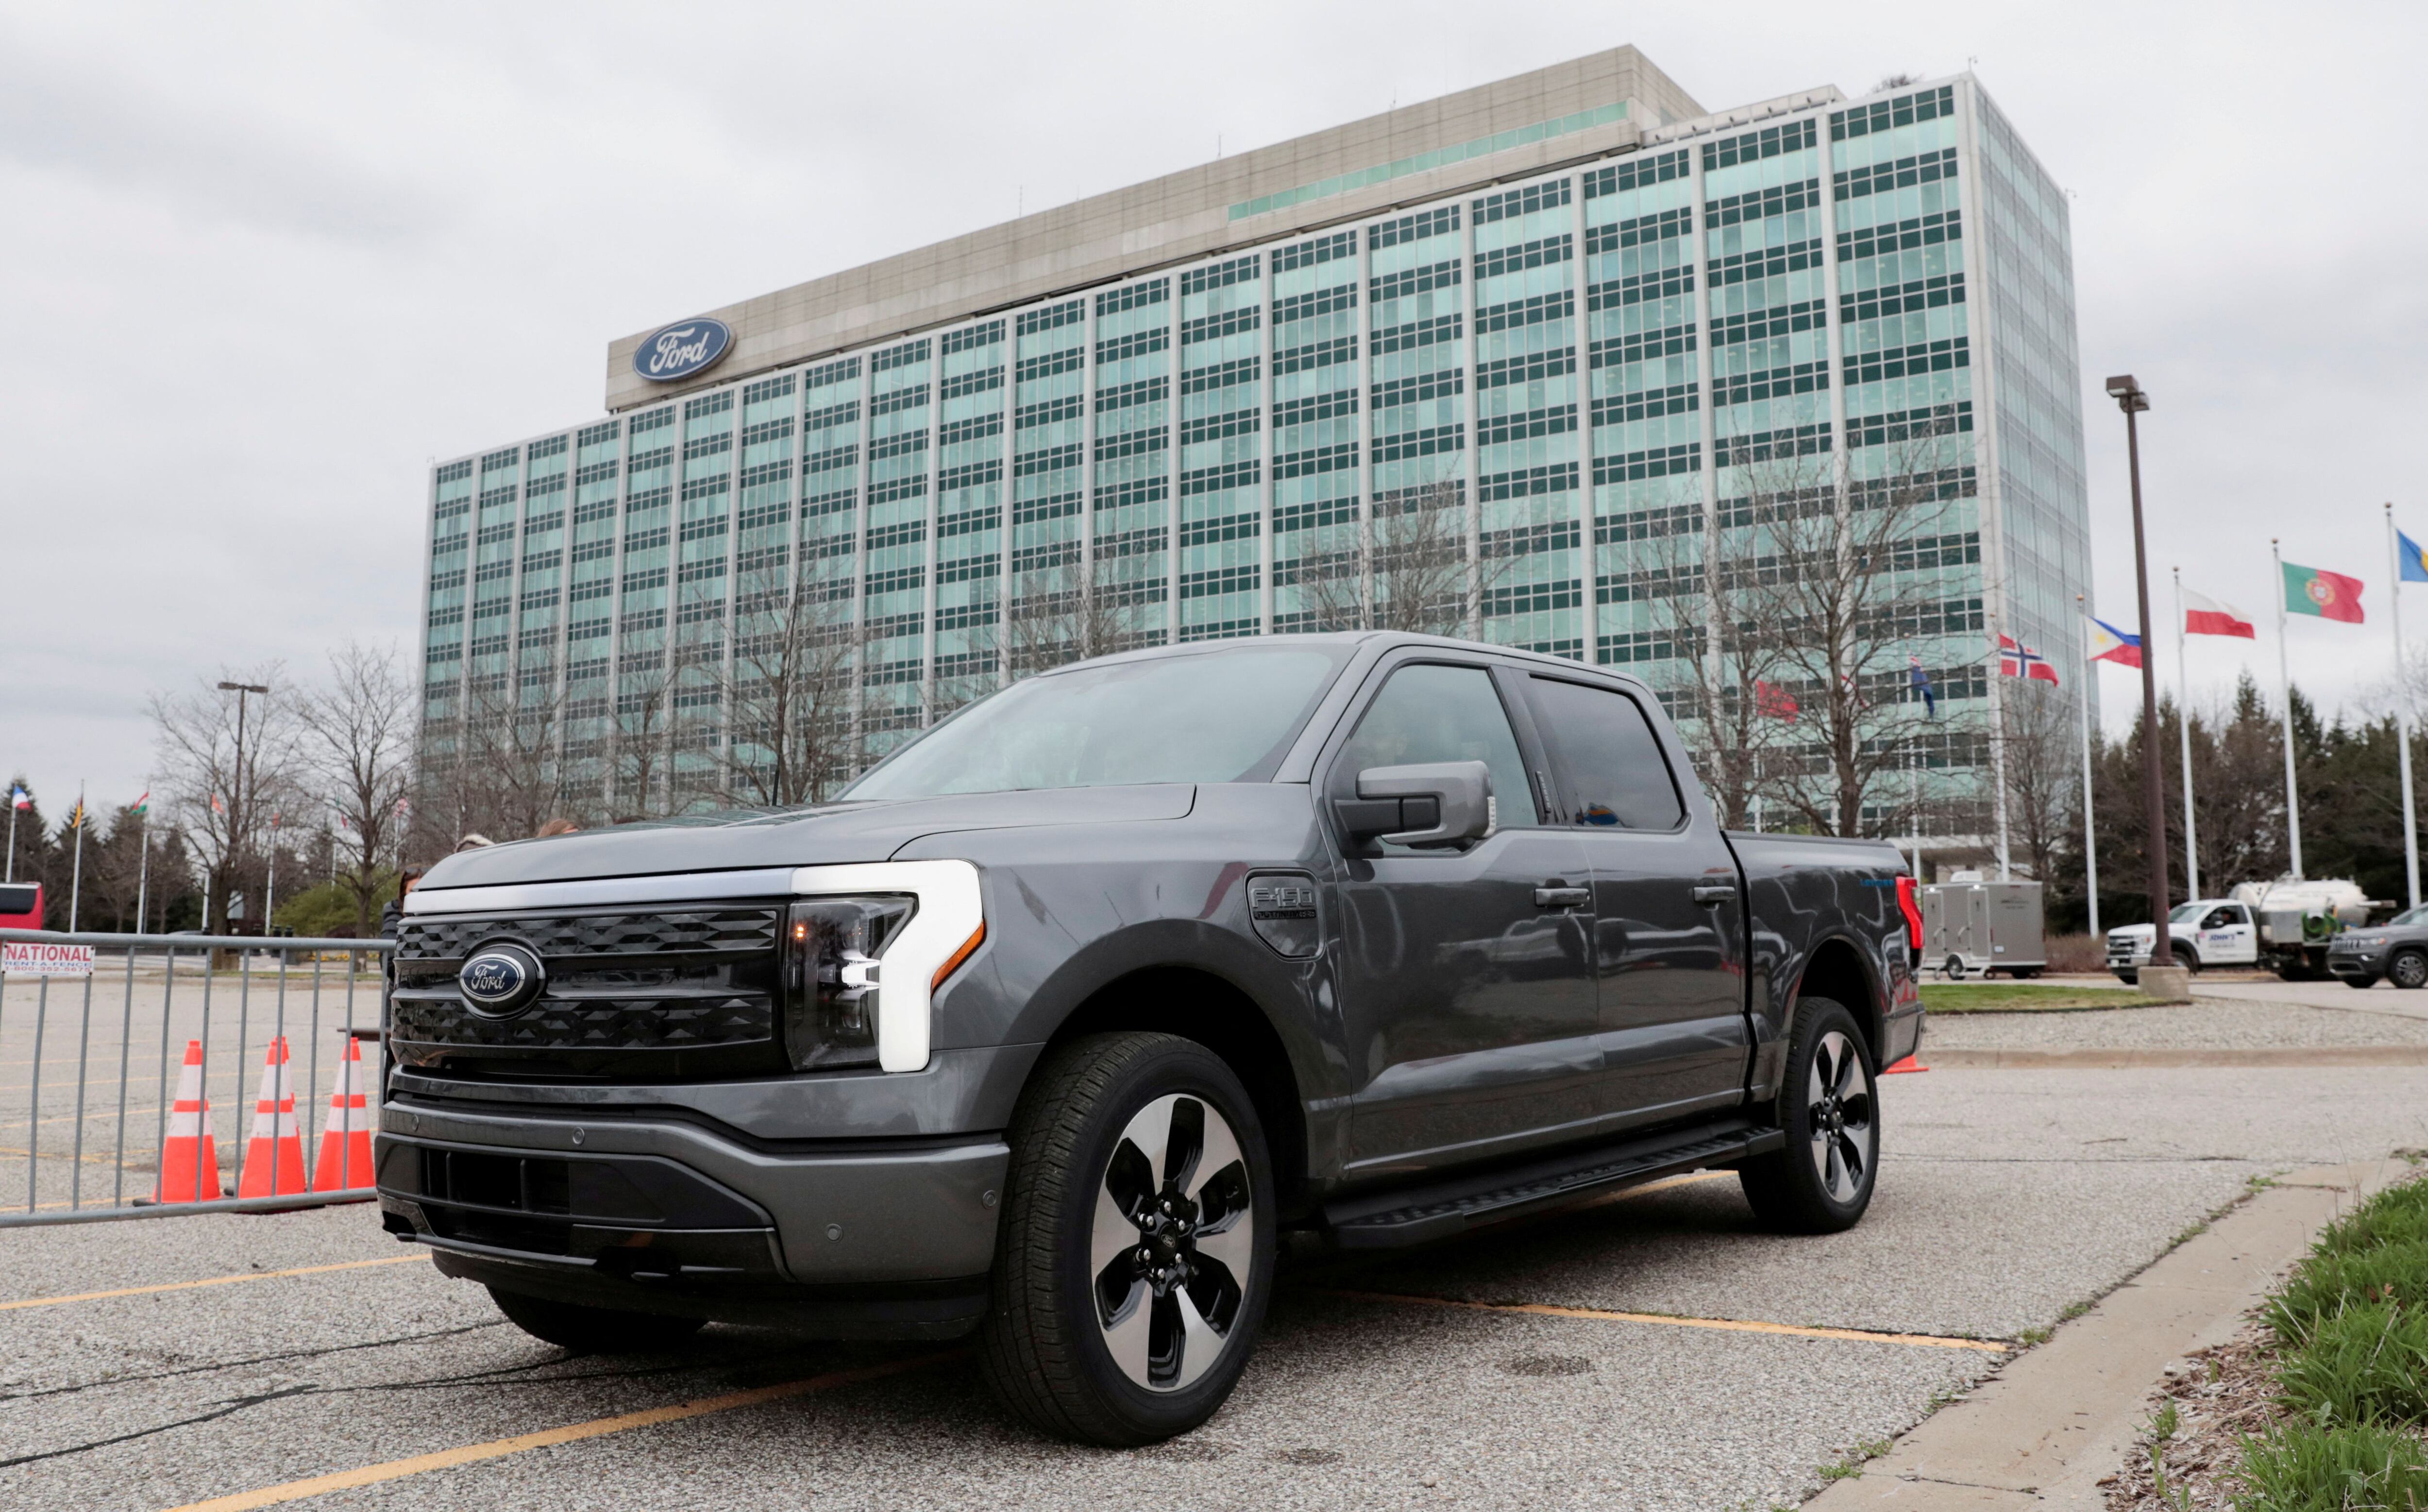 La pick-up Ford F-150 es un símbolo de la industria automotriz norteamericana. Ford y General Motors siguen siendo marcas de relieve mundial aunque mantienen pocas marcas dentro de su influencia. REUTERS/Rebecca Cook/File Photo